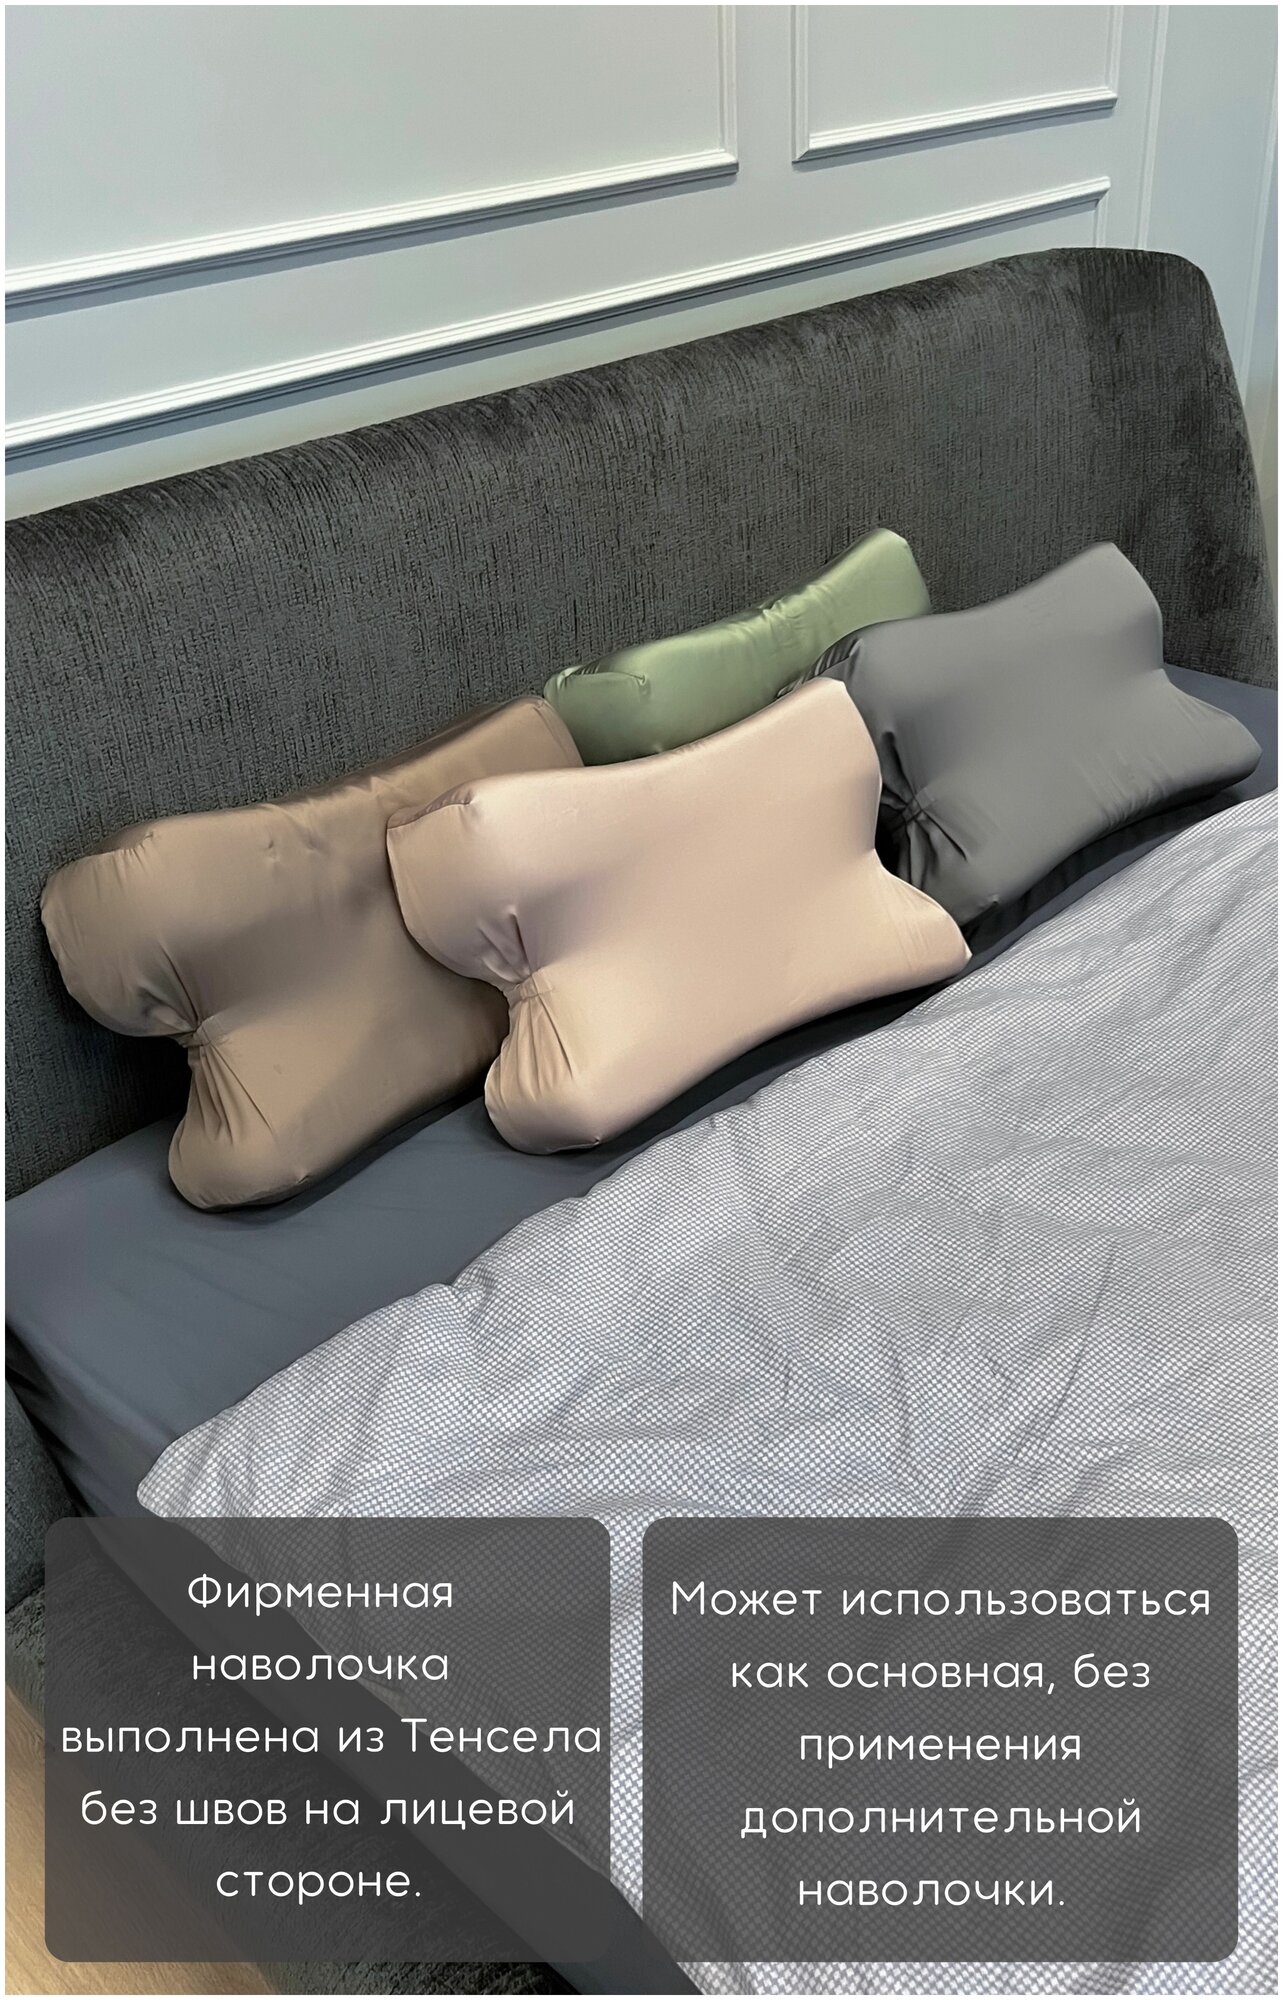 SkyDreams Анатомическая бьюти подушка от морщин сна, высота 10 см, цвет пудрово-розовый - фотография № 8